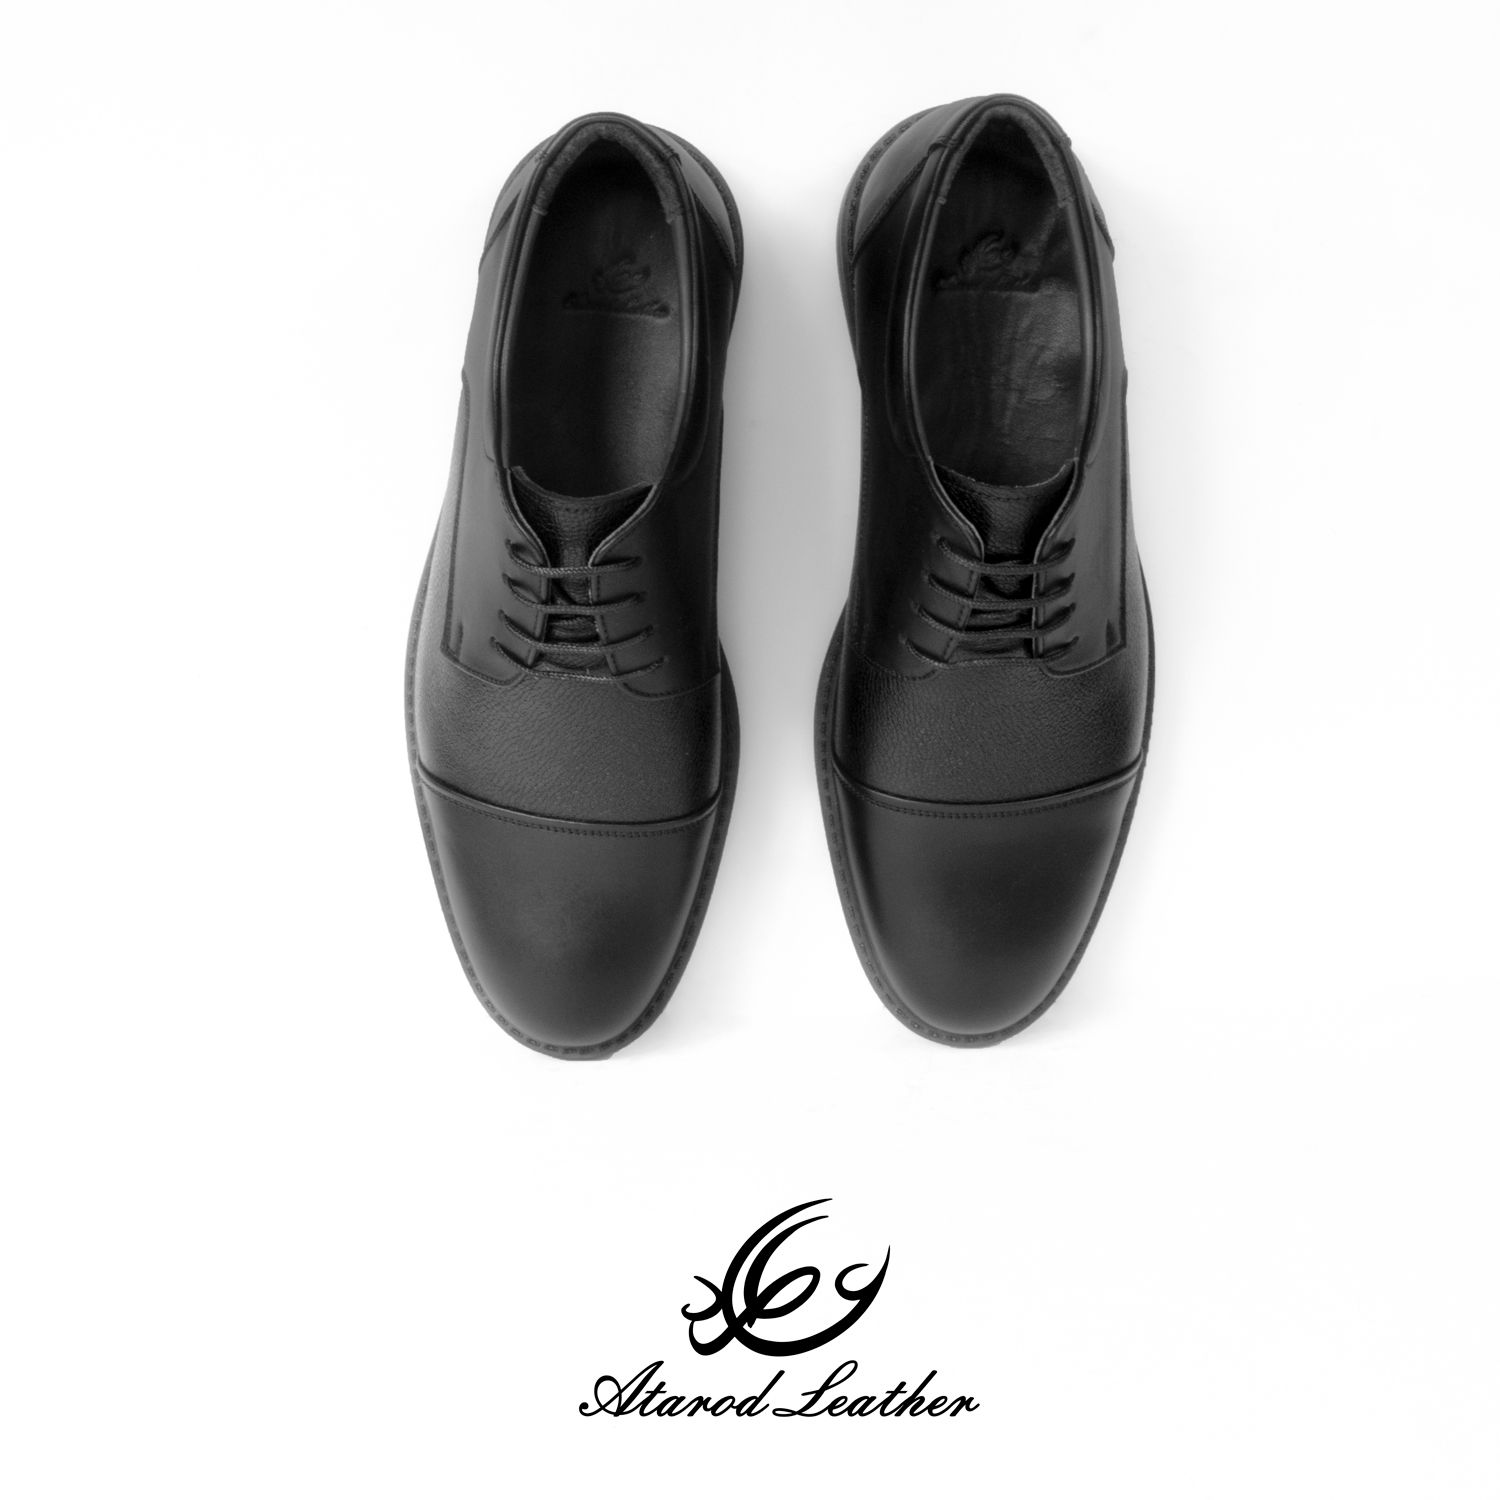 کفش روزمره مردانه چرم عطارد مدل چرم طبیعی کد SH81 -  - 11